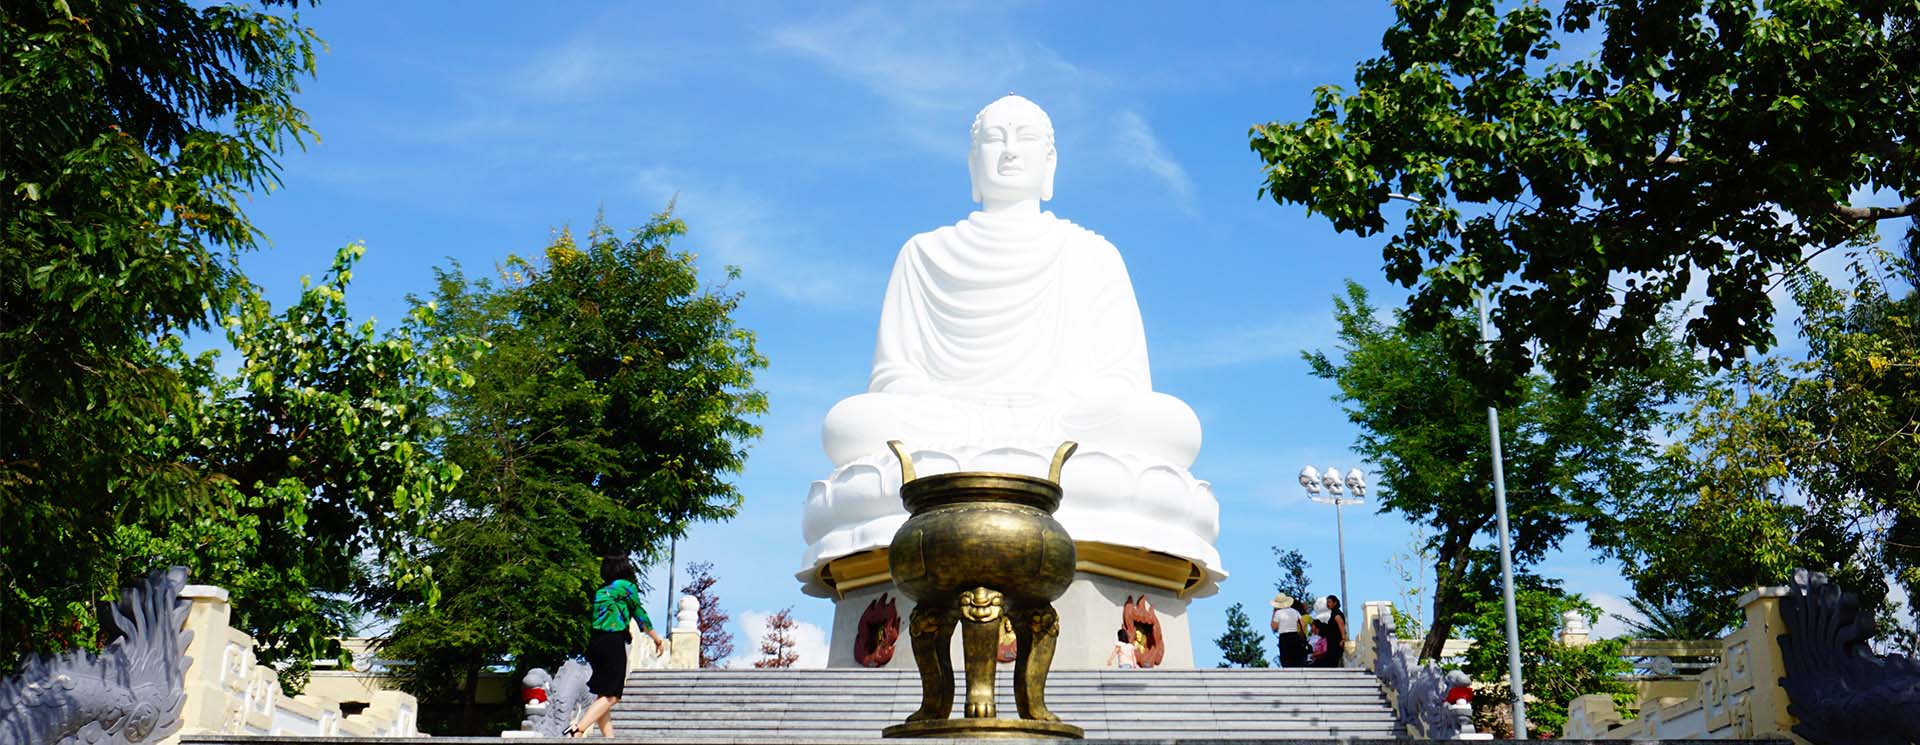 Chùa Long Sơn Nha Trang - Choáng ngợp với vẻ đẹp của bức tượng Phật trắng lớn nhất tại Việt Nam 2